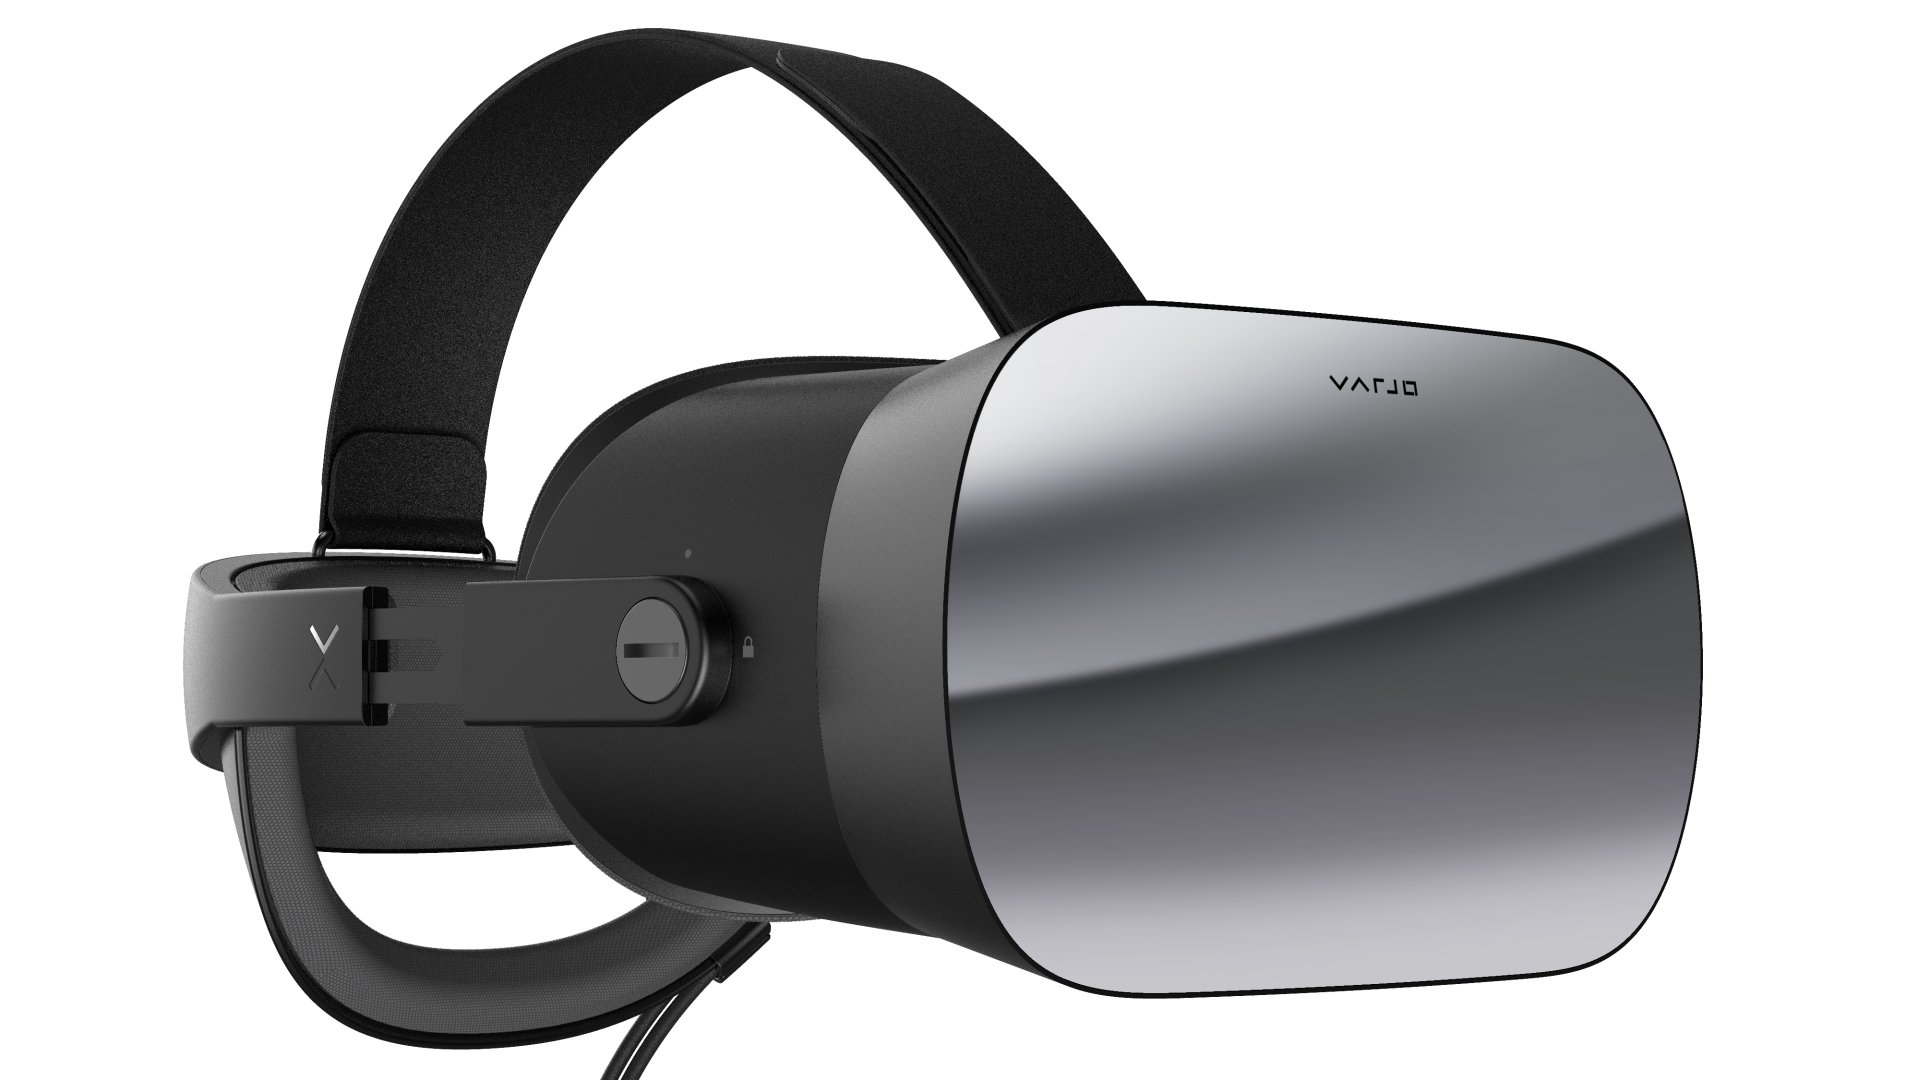 Schenker Technologies ist offizieller Varjo-Distributionspartner für das professionelle Virtual-Reality-Headset VR-1